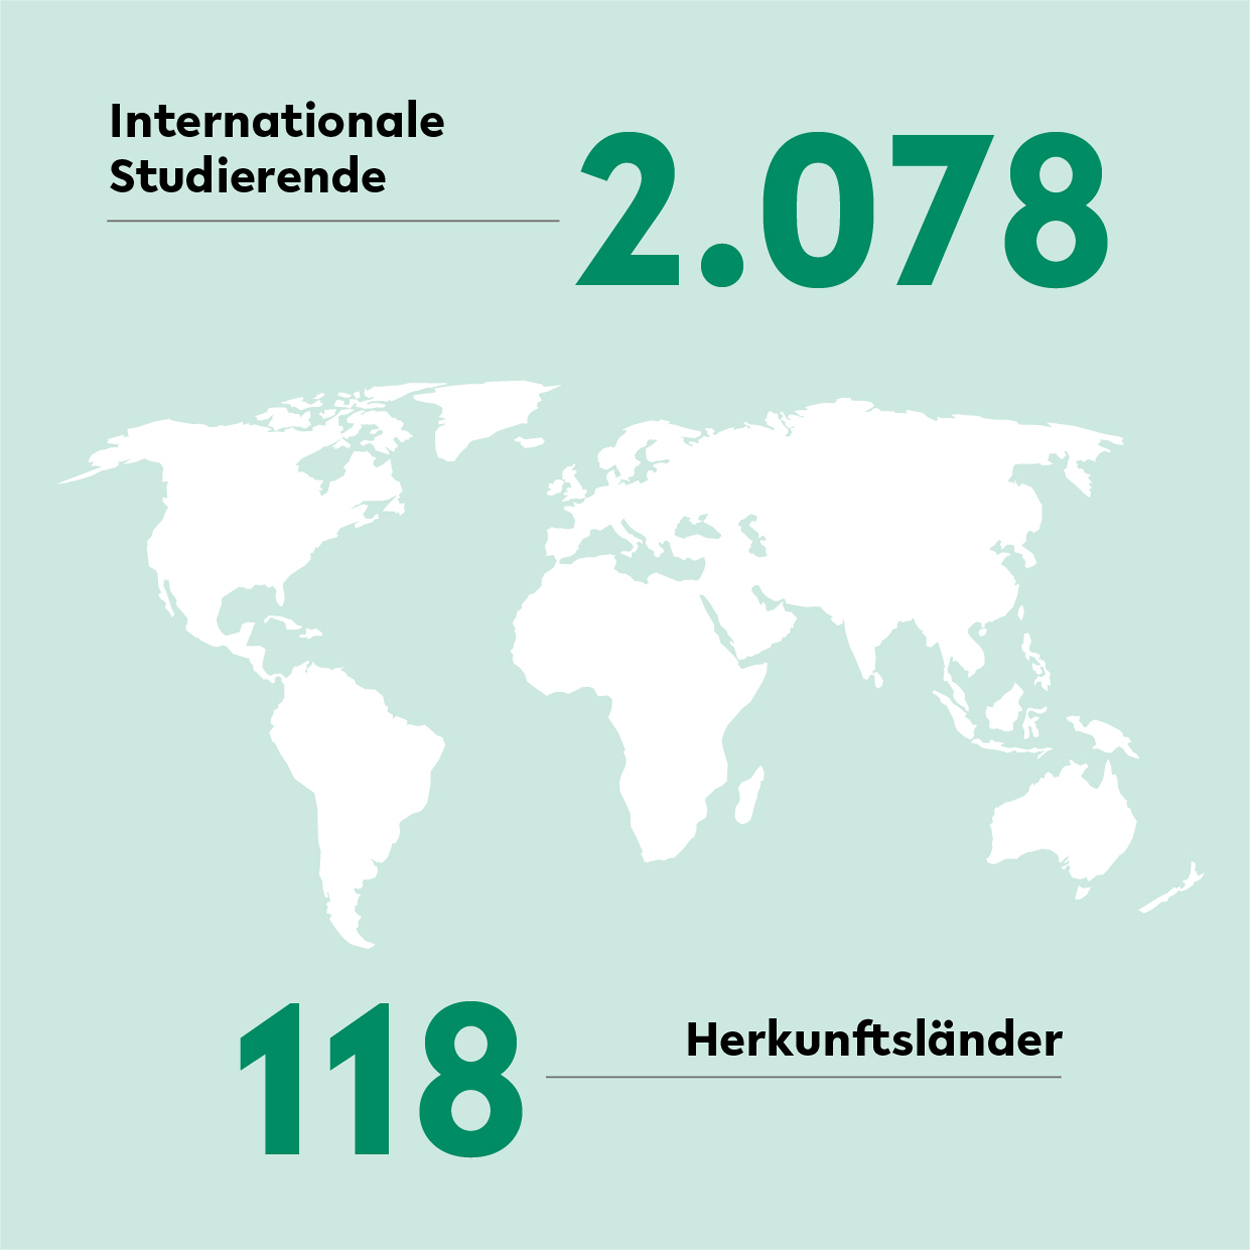 An der Universitt Bielefeld studieren im Jahr 2021 2025 internationale Studierende aus 118 Lndern.  